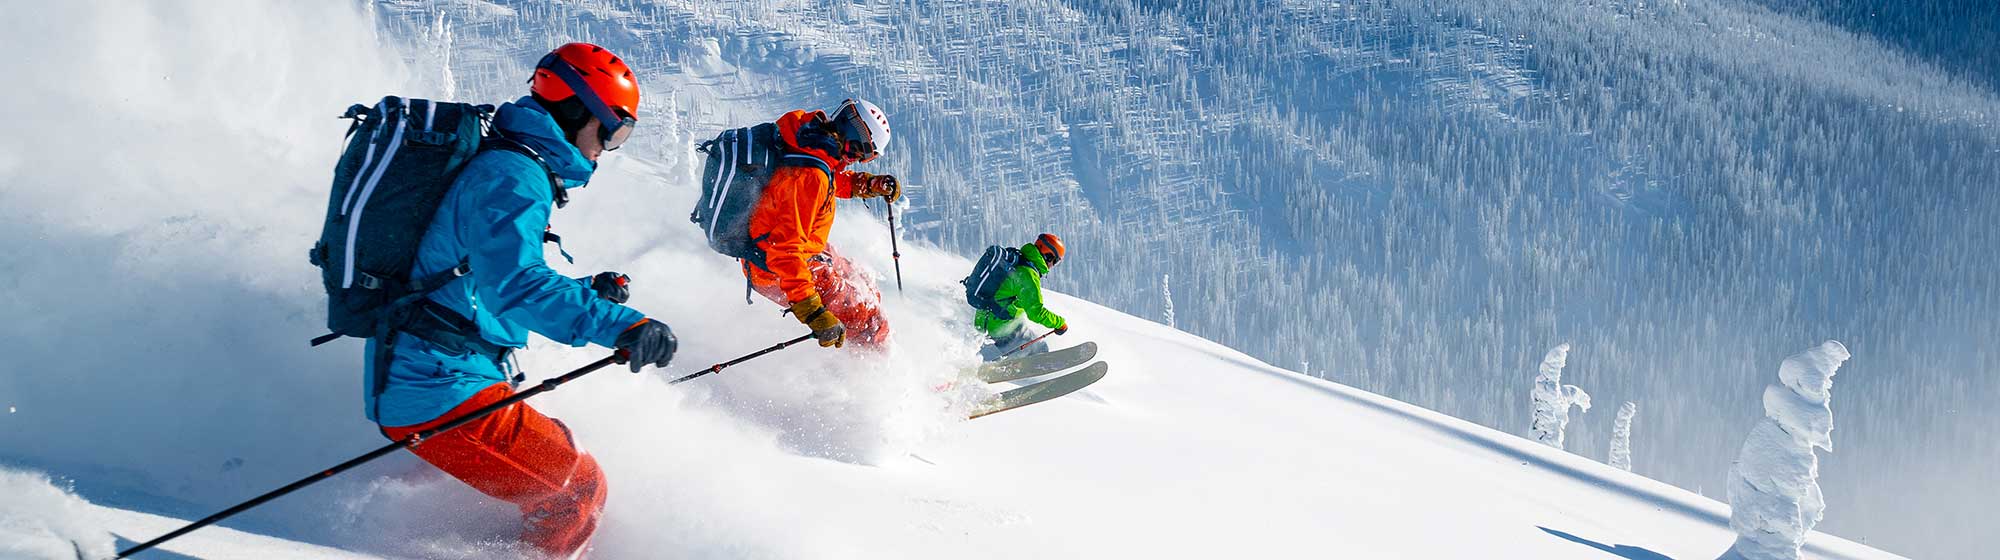 Des skieurs descendent la montagne dans le niege poudreuse